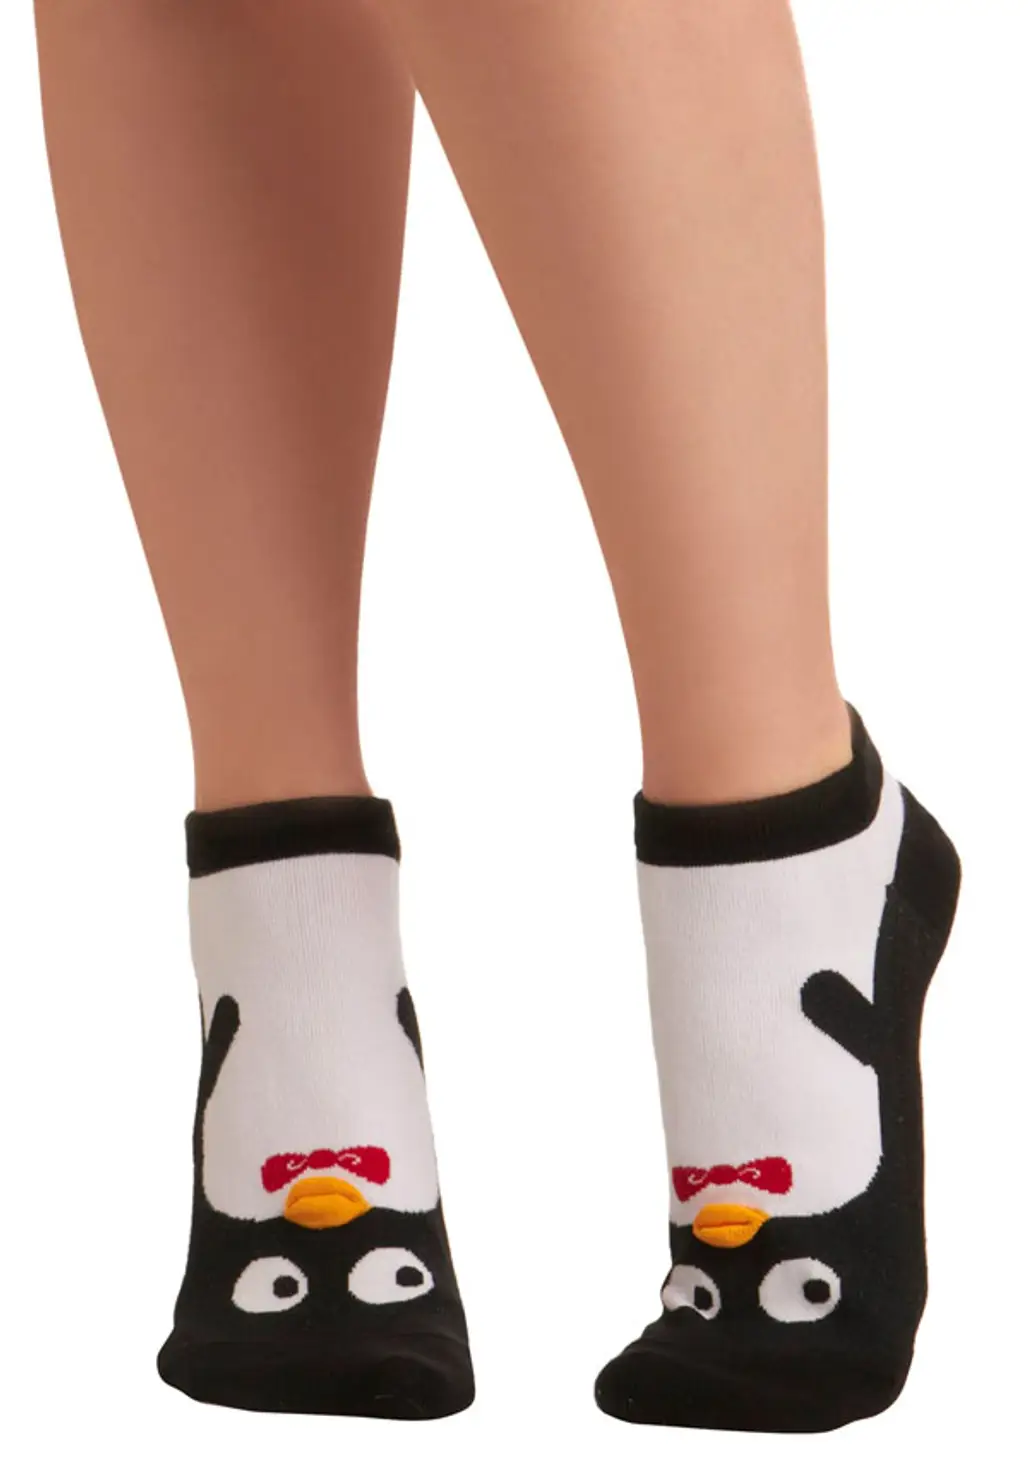 Kindred Soles Socks in Penguin